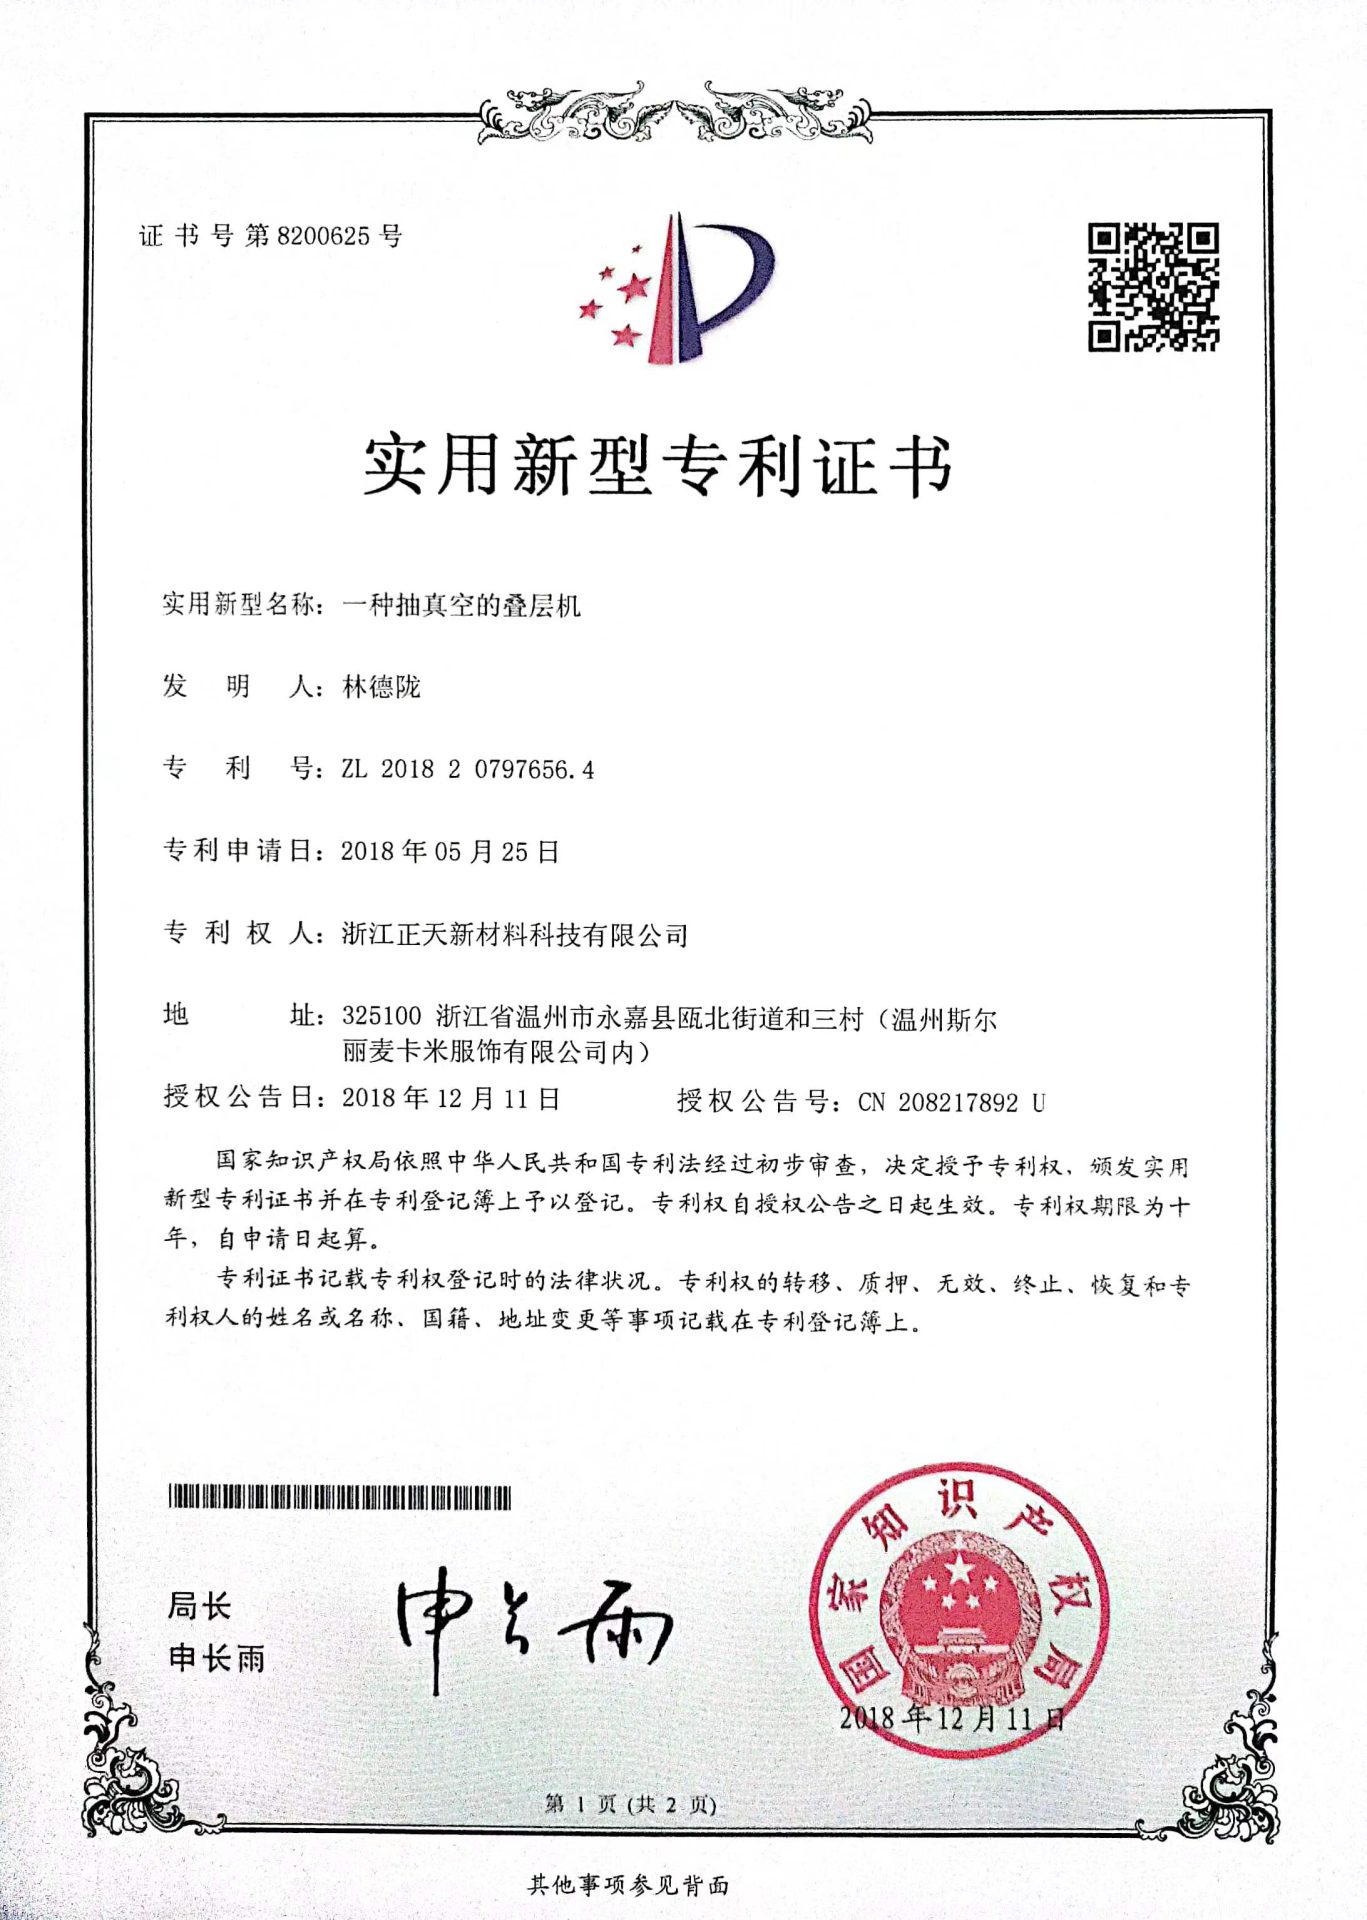 Zhengtian New Materials Technology Co., LTD. | Home